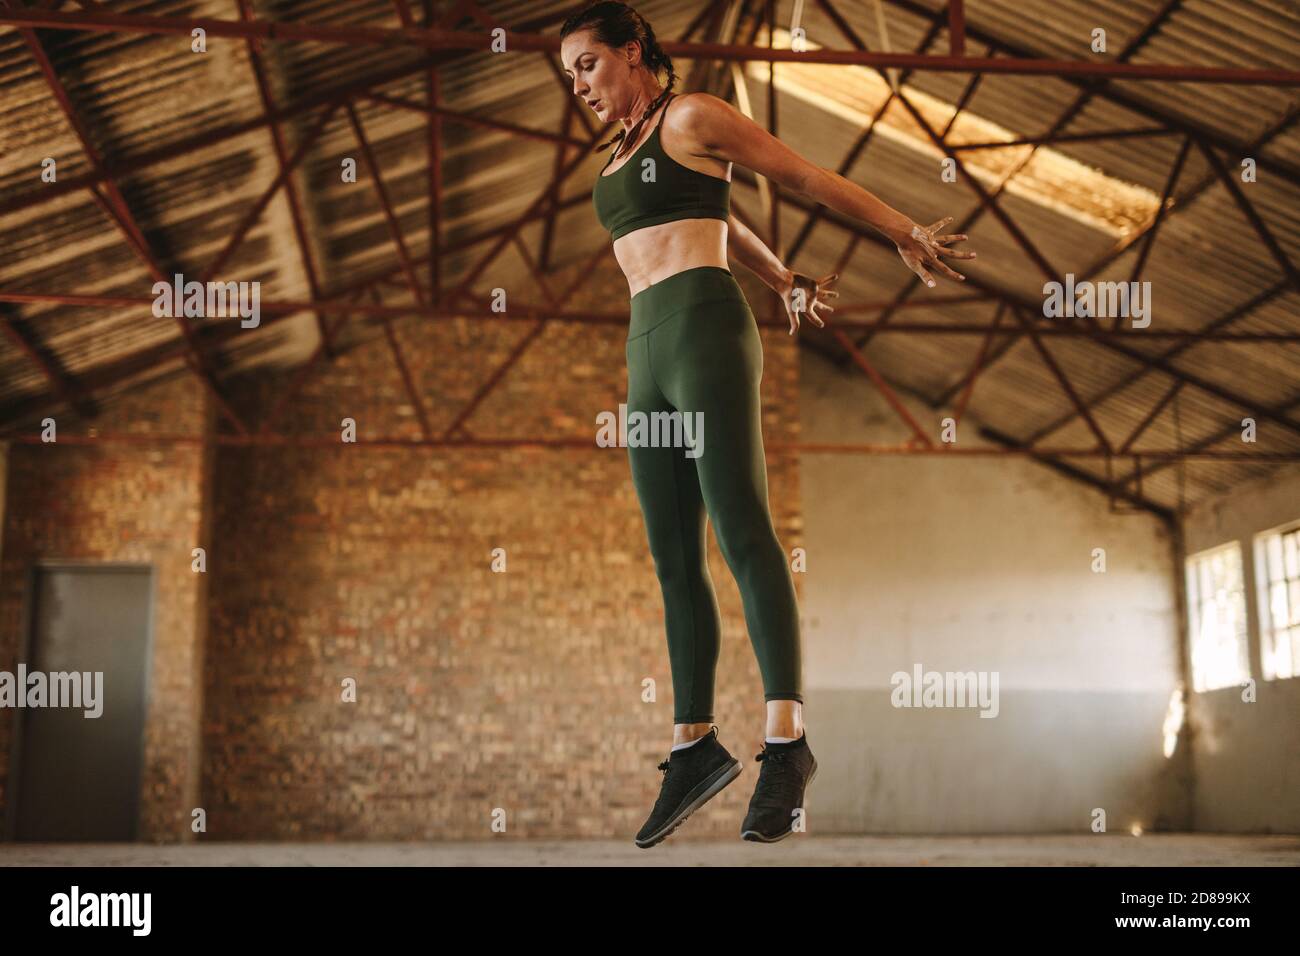 Sportlerin springt hoch. Gesunde Fitness Frau tun Übung im Fitnessraum im alten Fabrik Schatten. Stockfoto